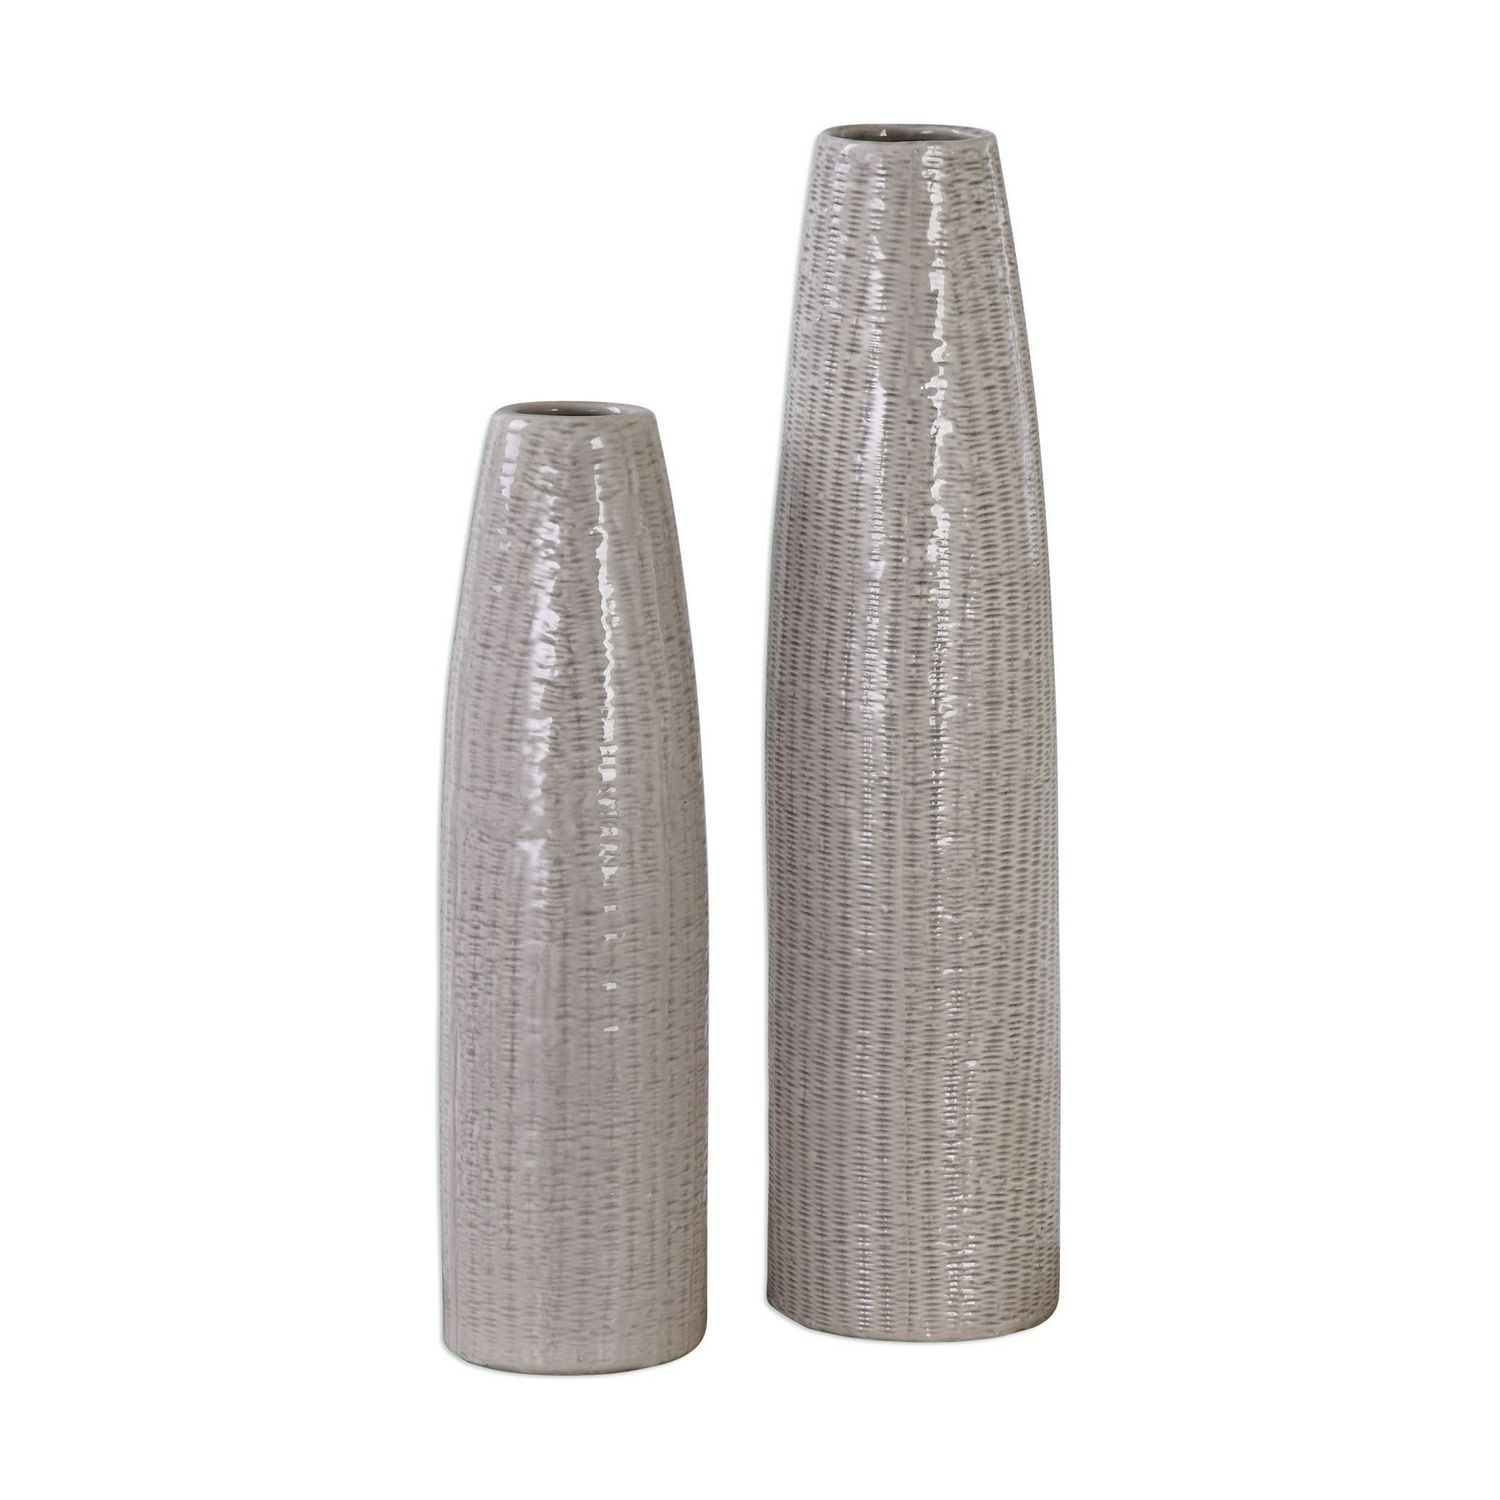 Uttermost Sara Vases - Set of 2 - Textured Ceramic